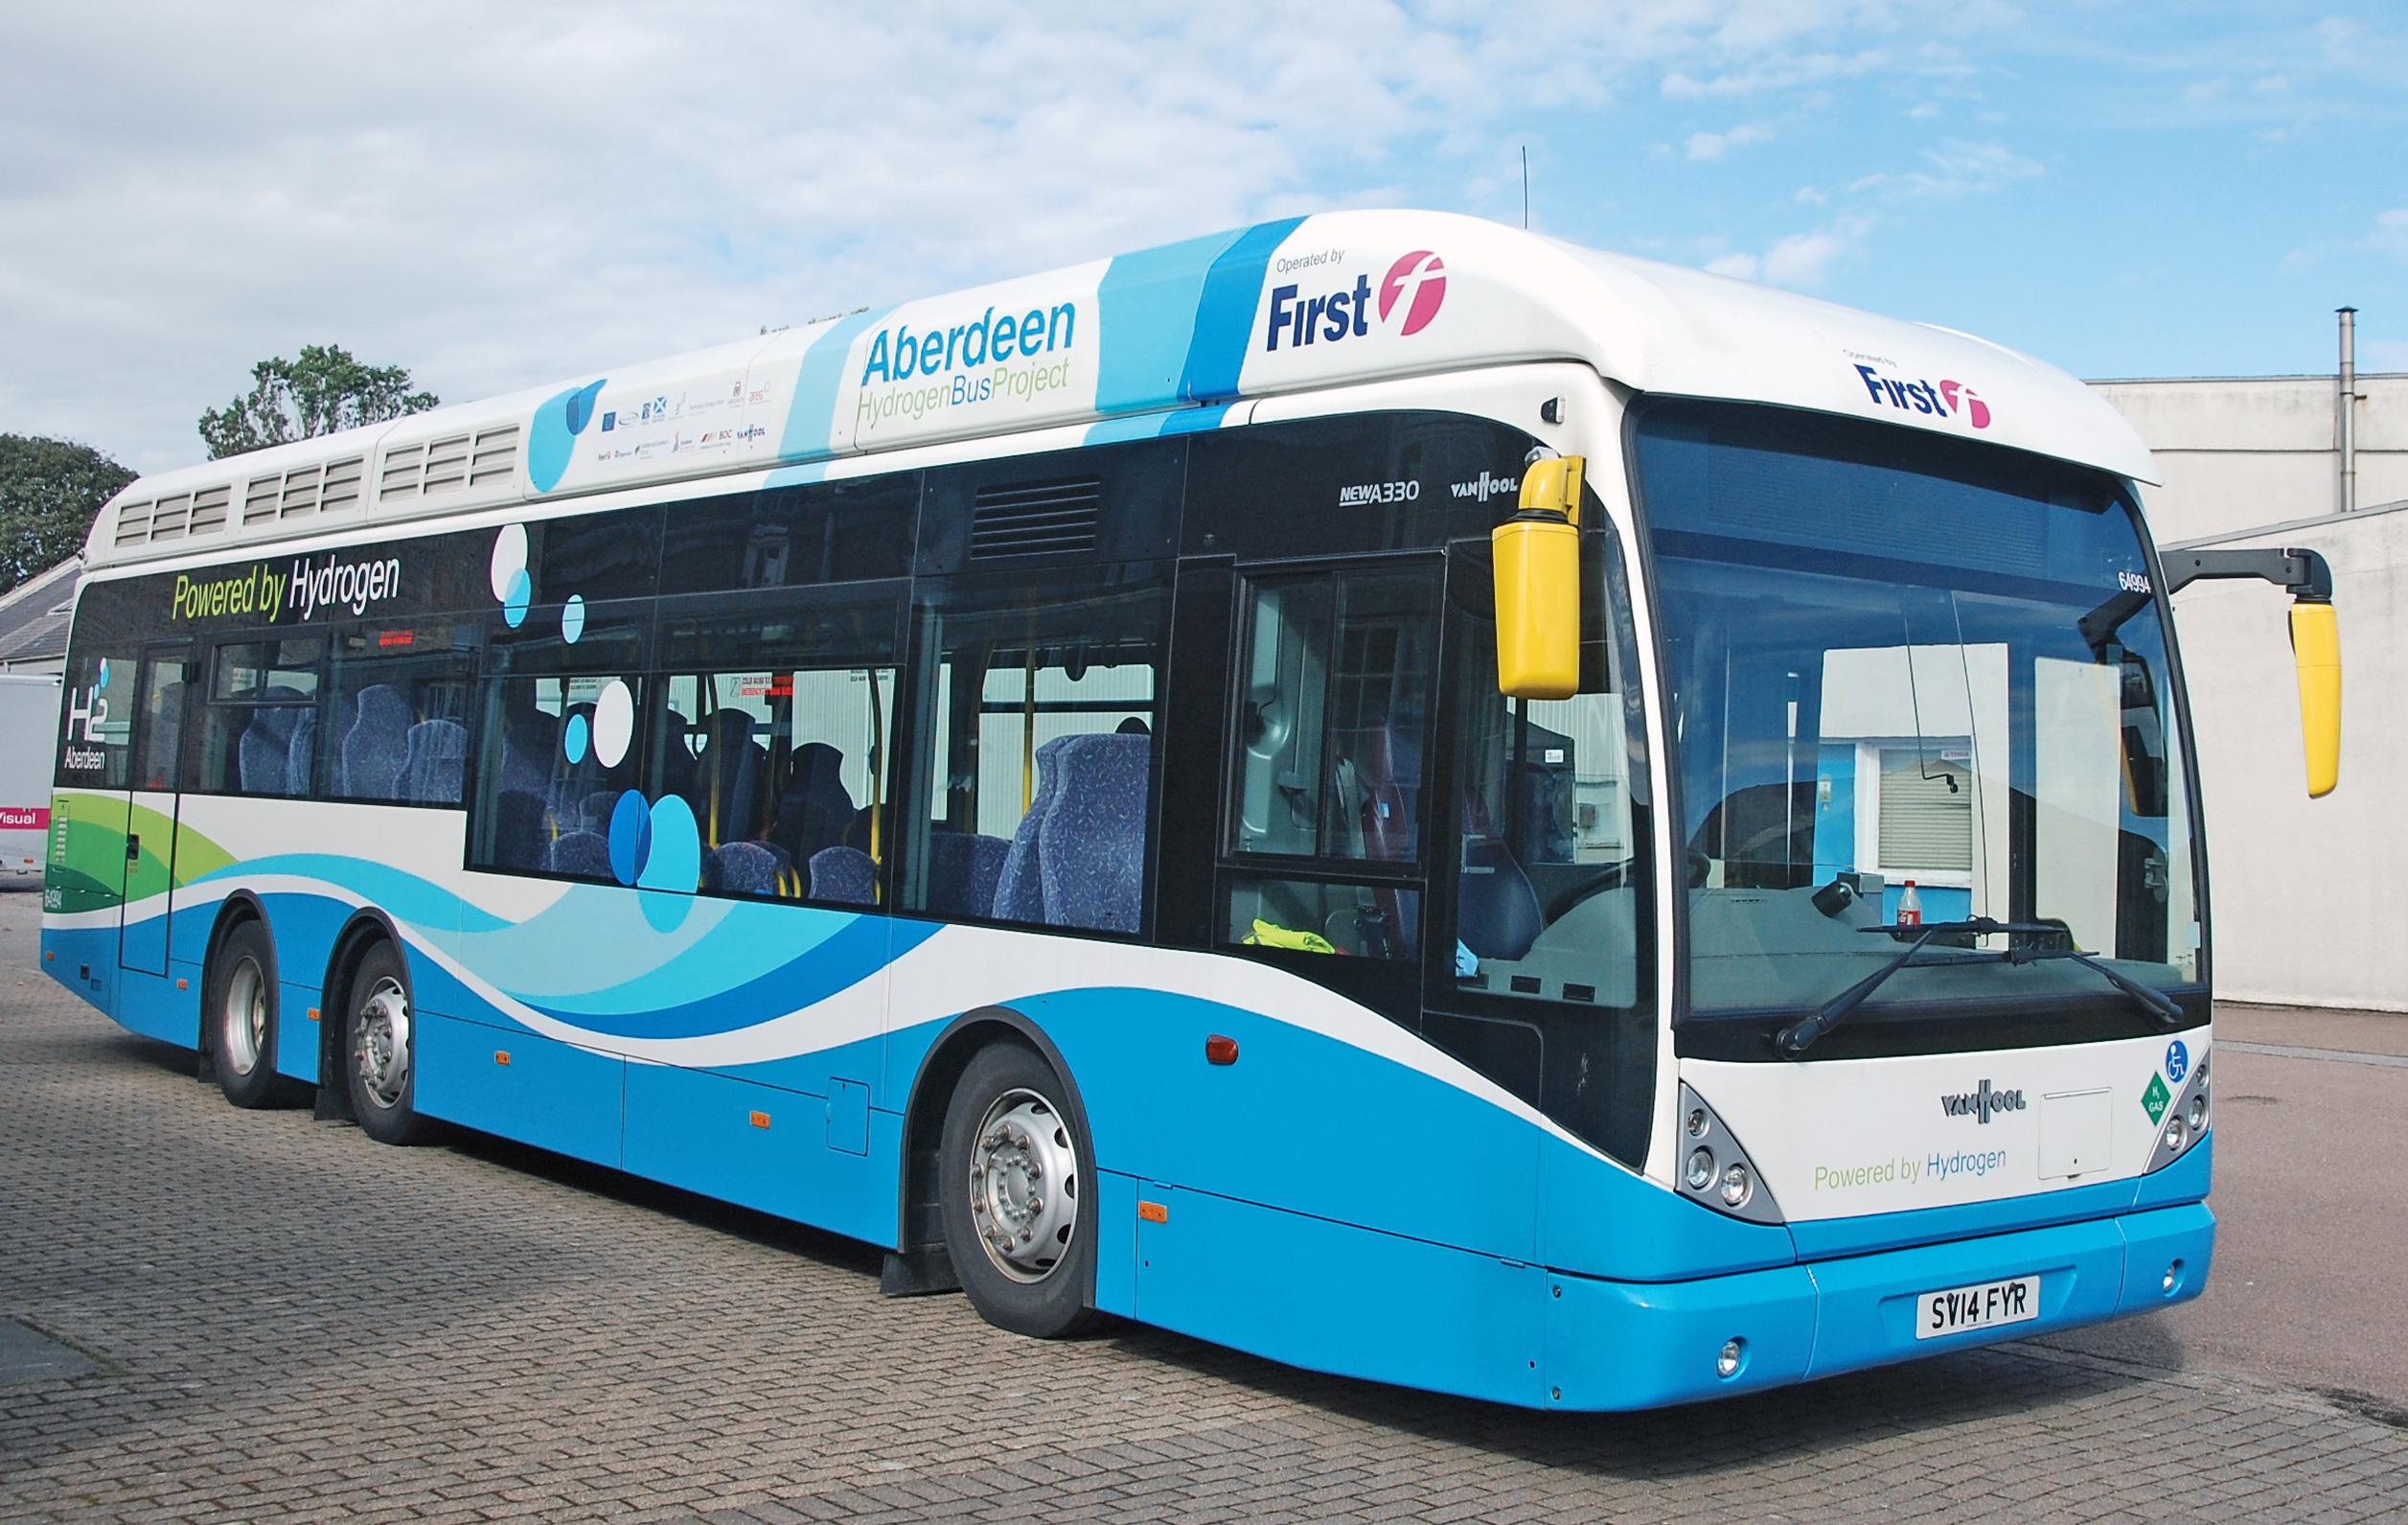 Birmingham wants to follow Aberdeen’s hydrogen bus lead